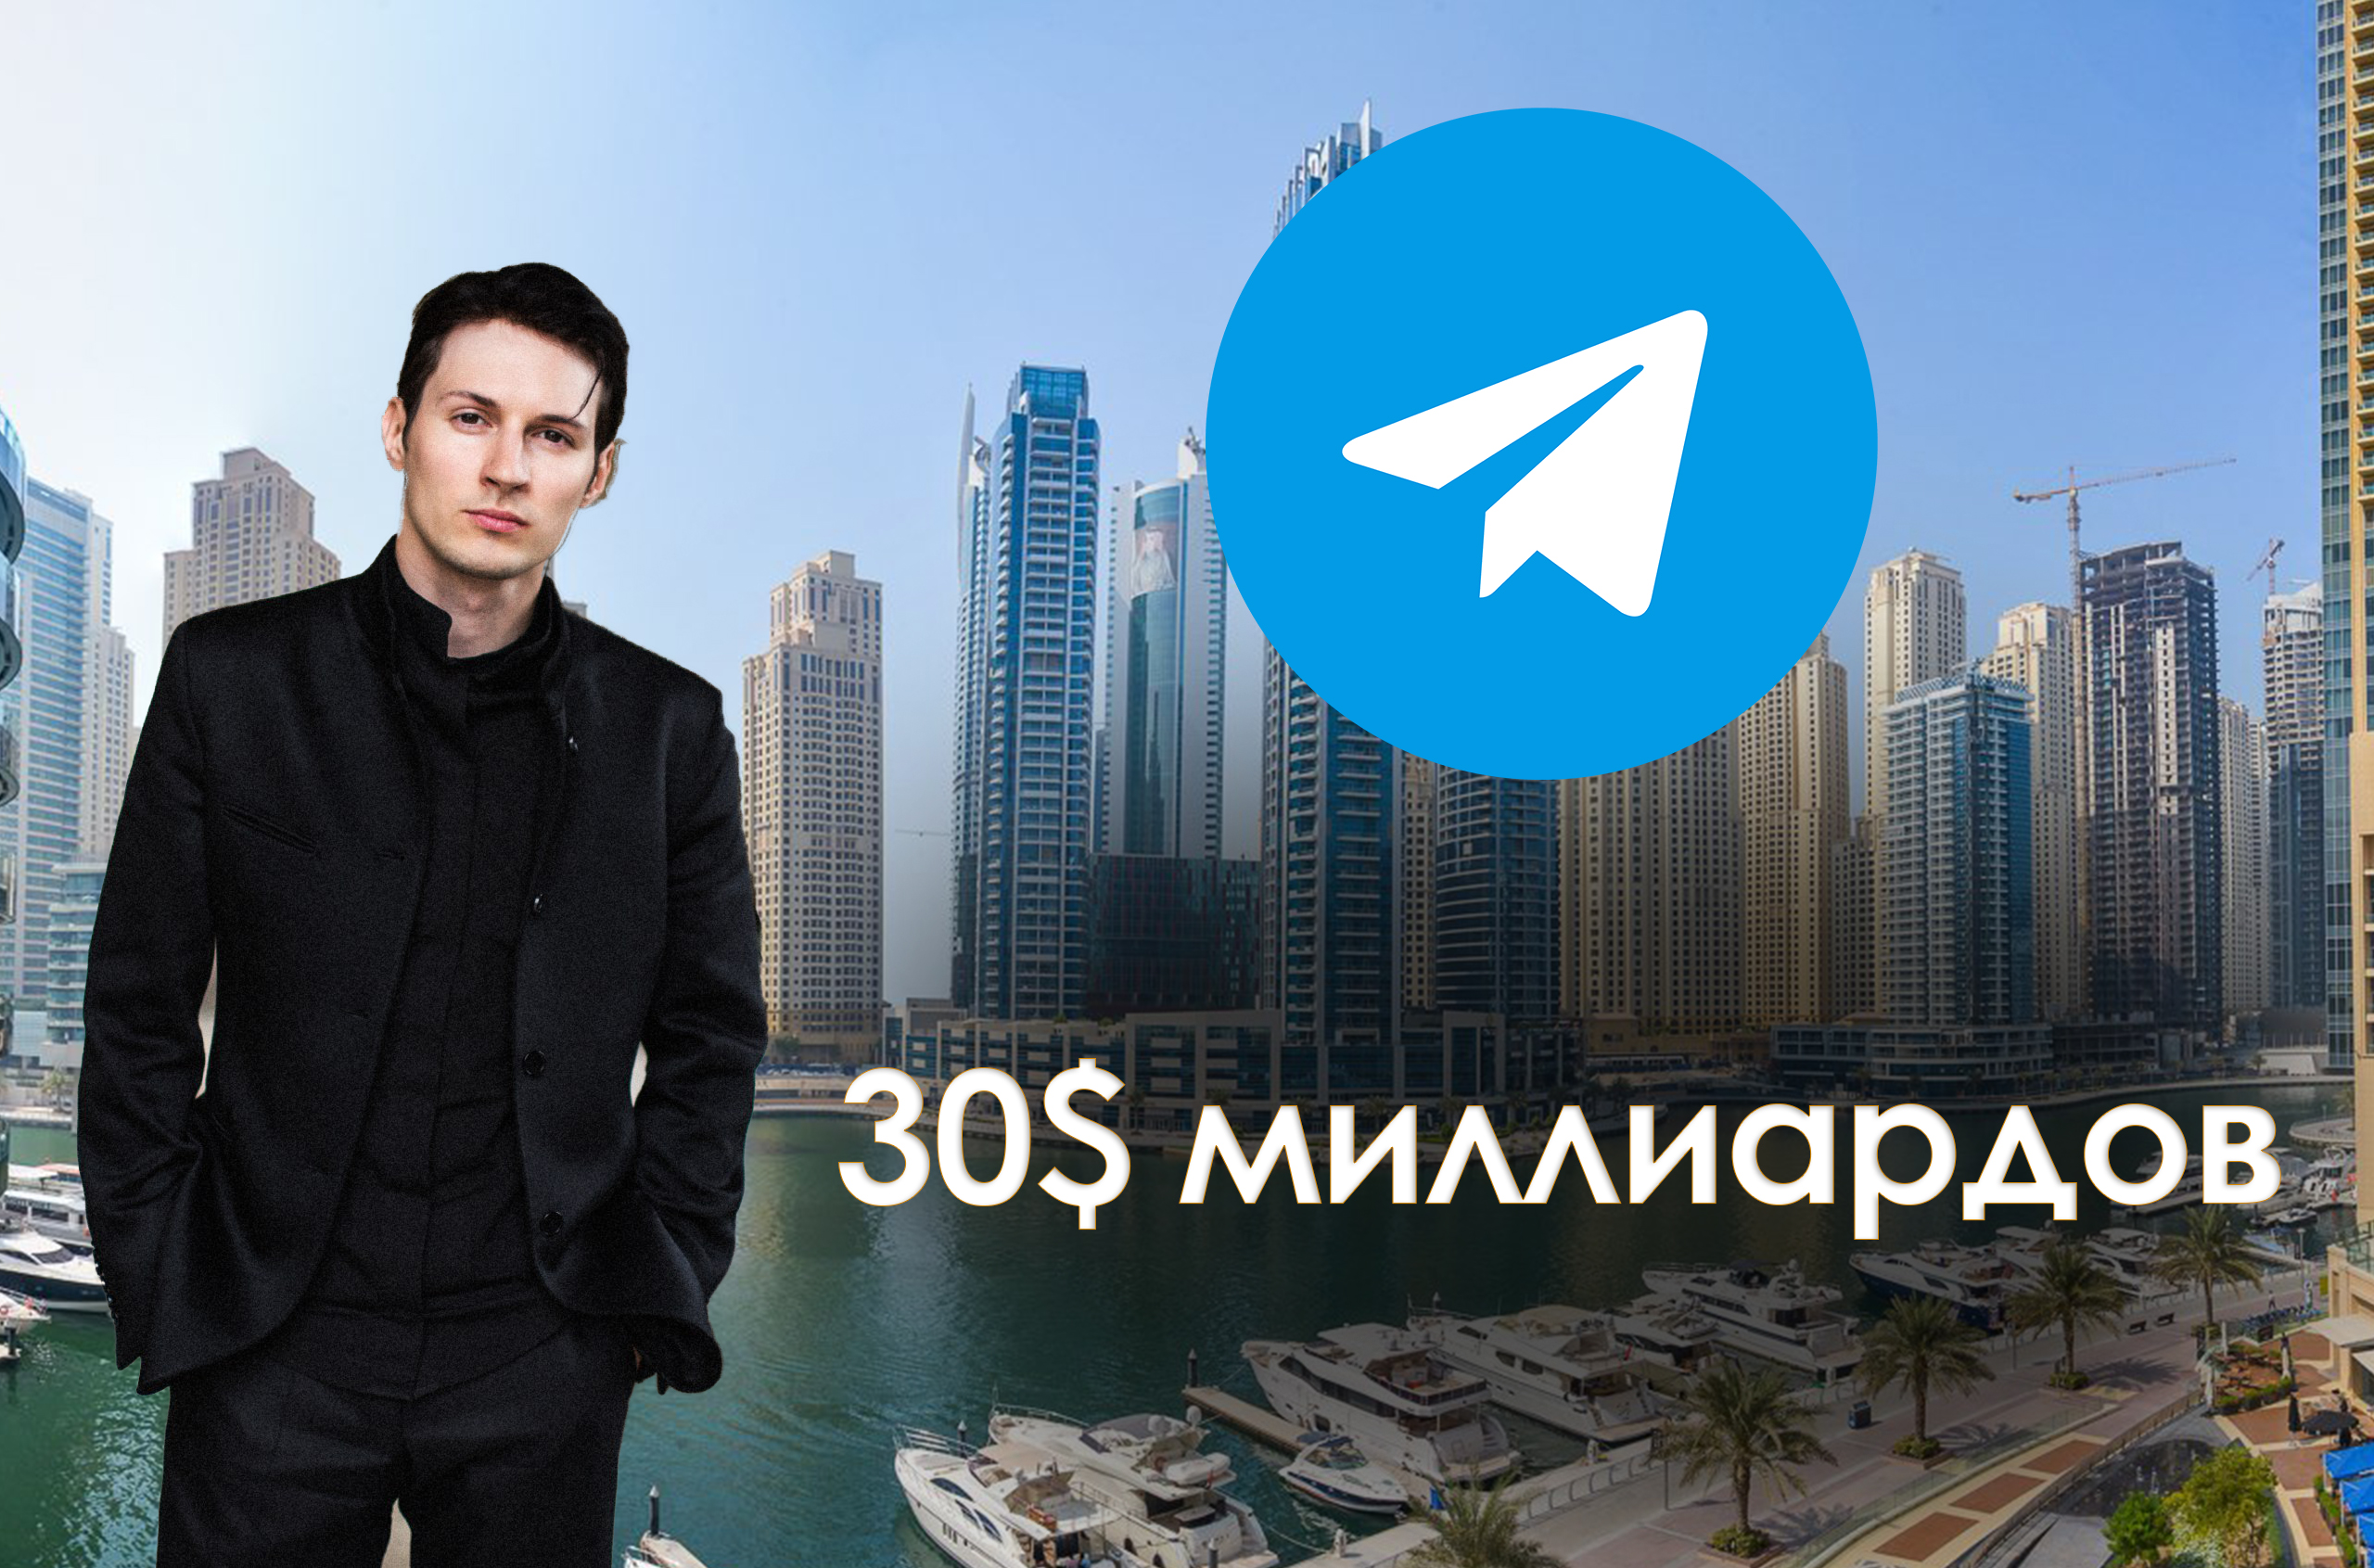 Павел Дуров оценил стоимость телеграм в 30 миллиардов долларов